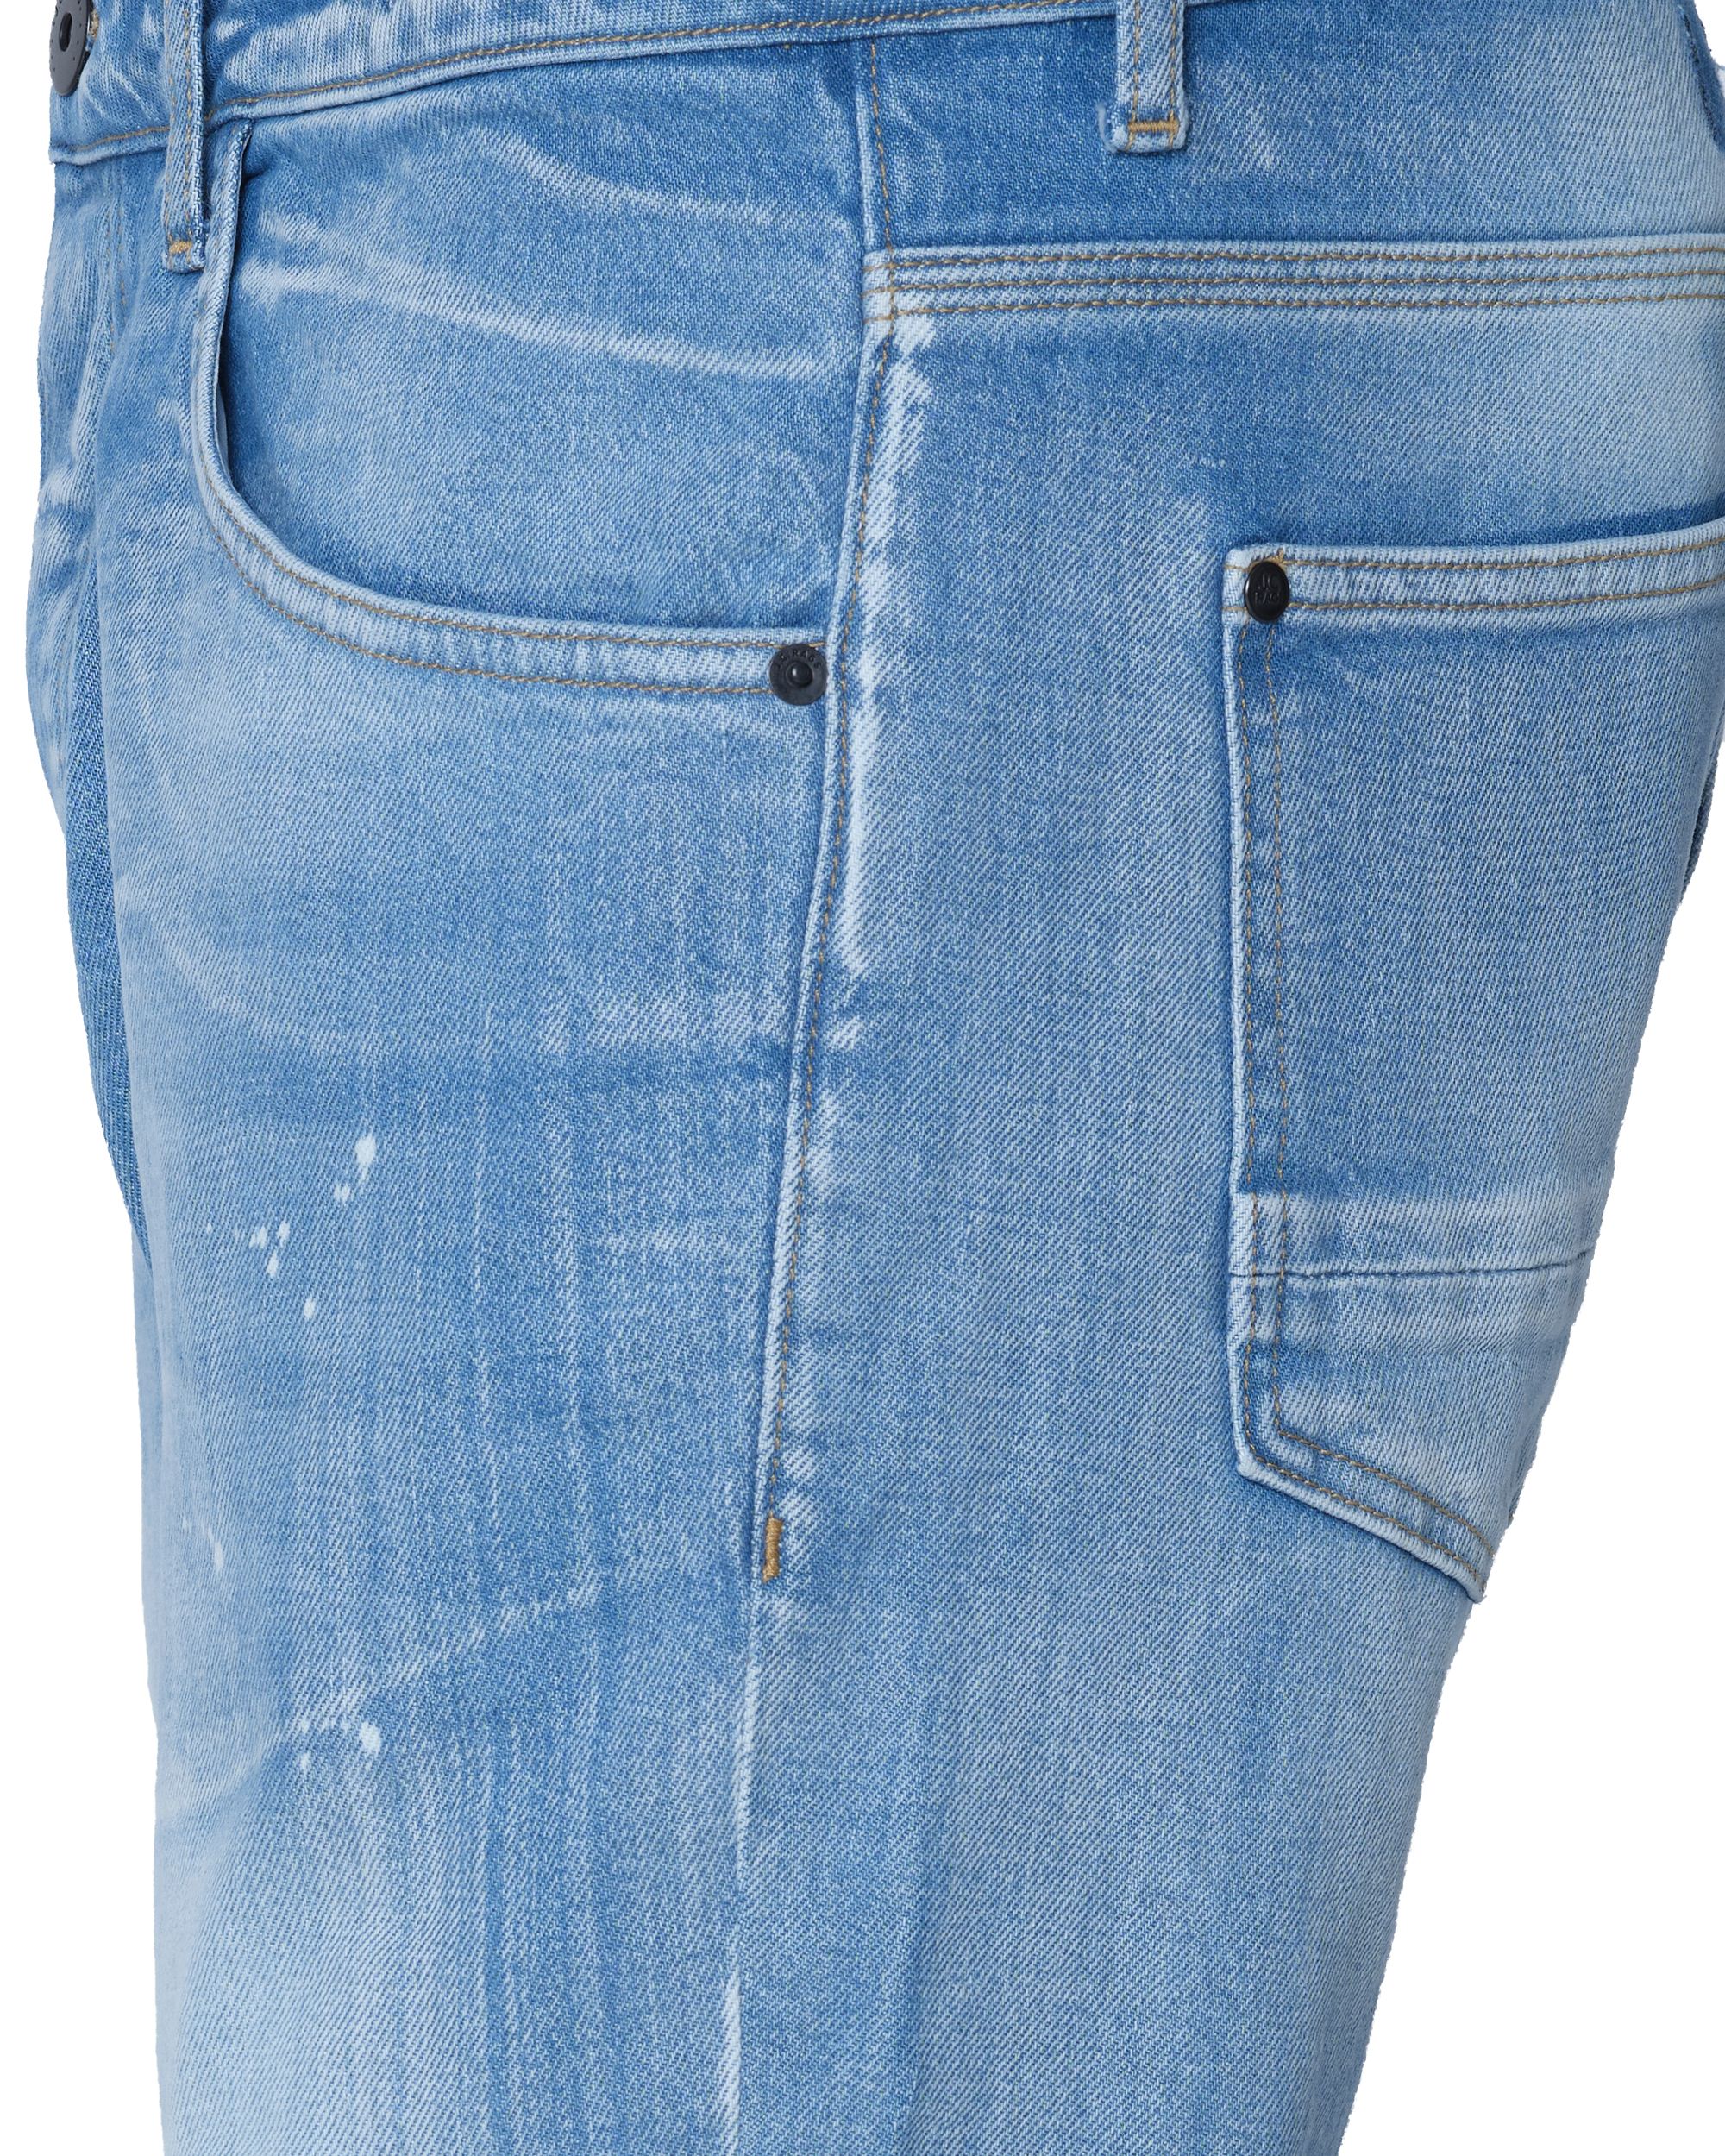 J.C. RAGS Jeans Mid Blue 082423-001-28/32